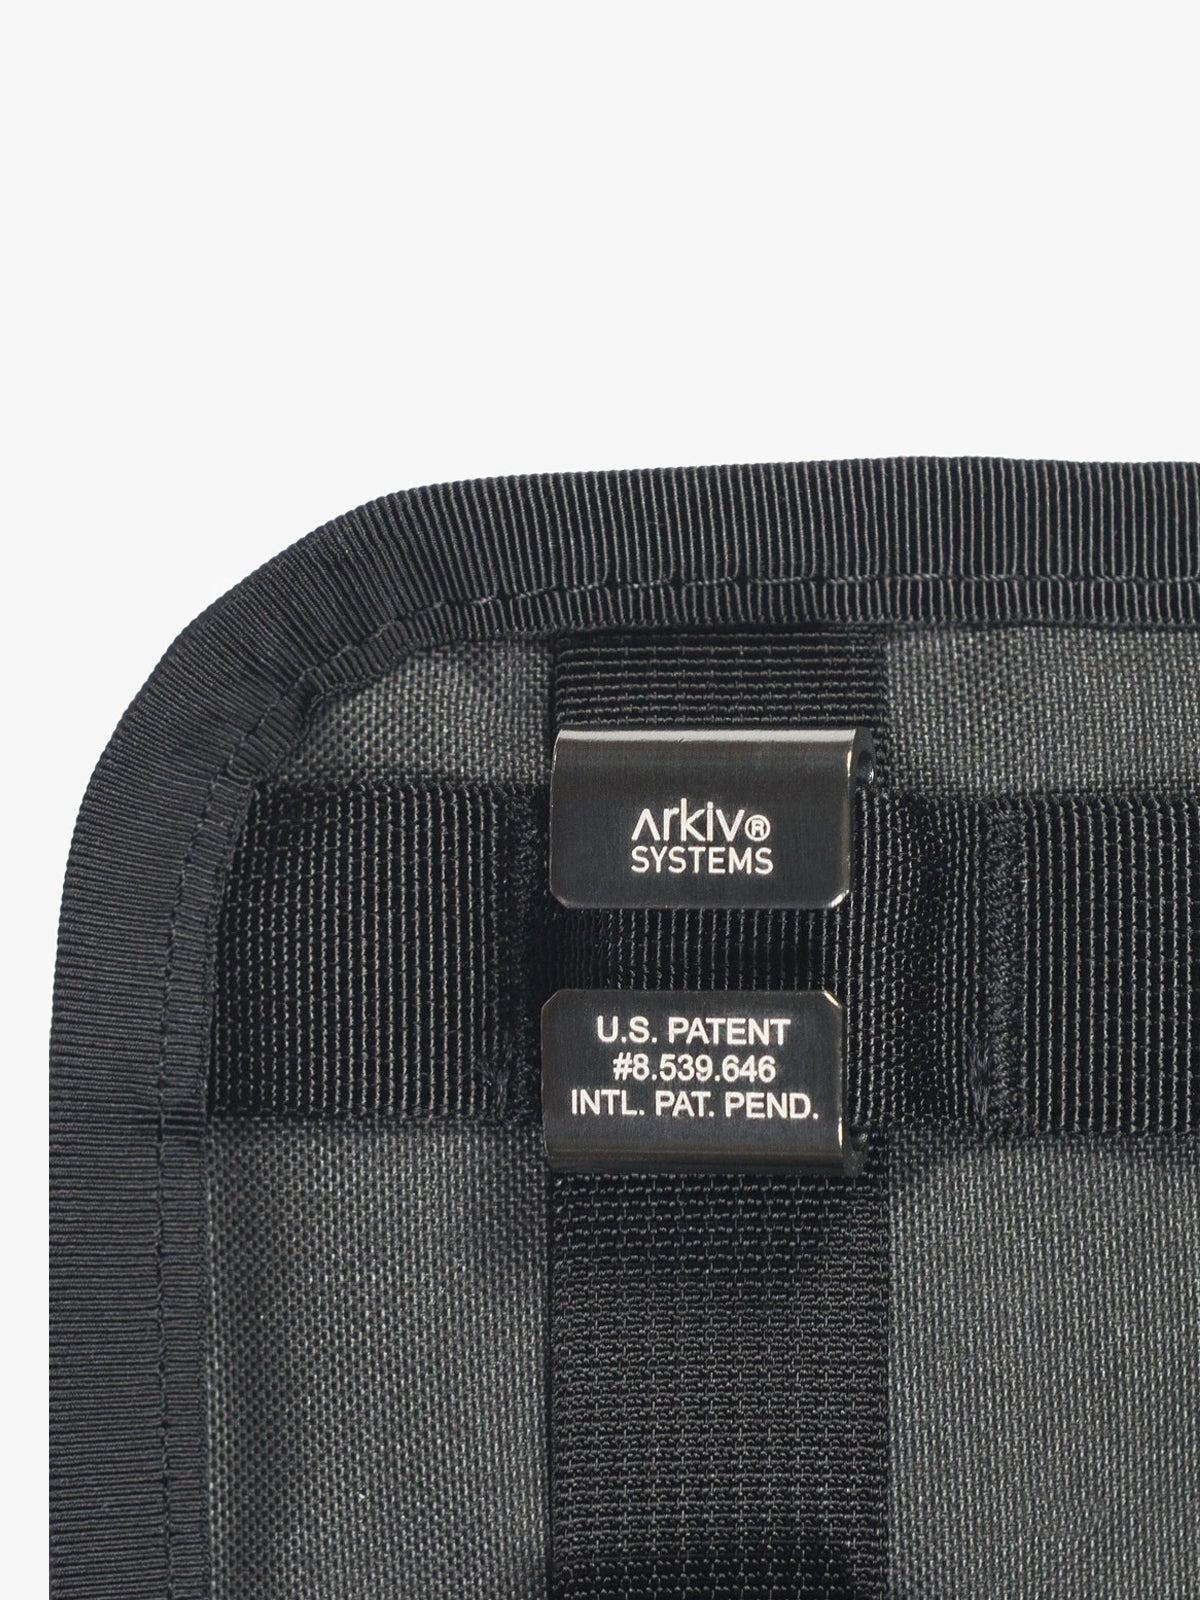 Arkiv Vertical Rolltop Pocket by Mission Workshop - Bolsas impermeables y ropa técnica - San Francisco y Los Angeles - Construidas para durar - Garantizadas para siempre